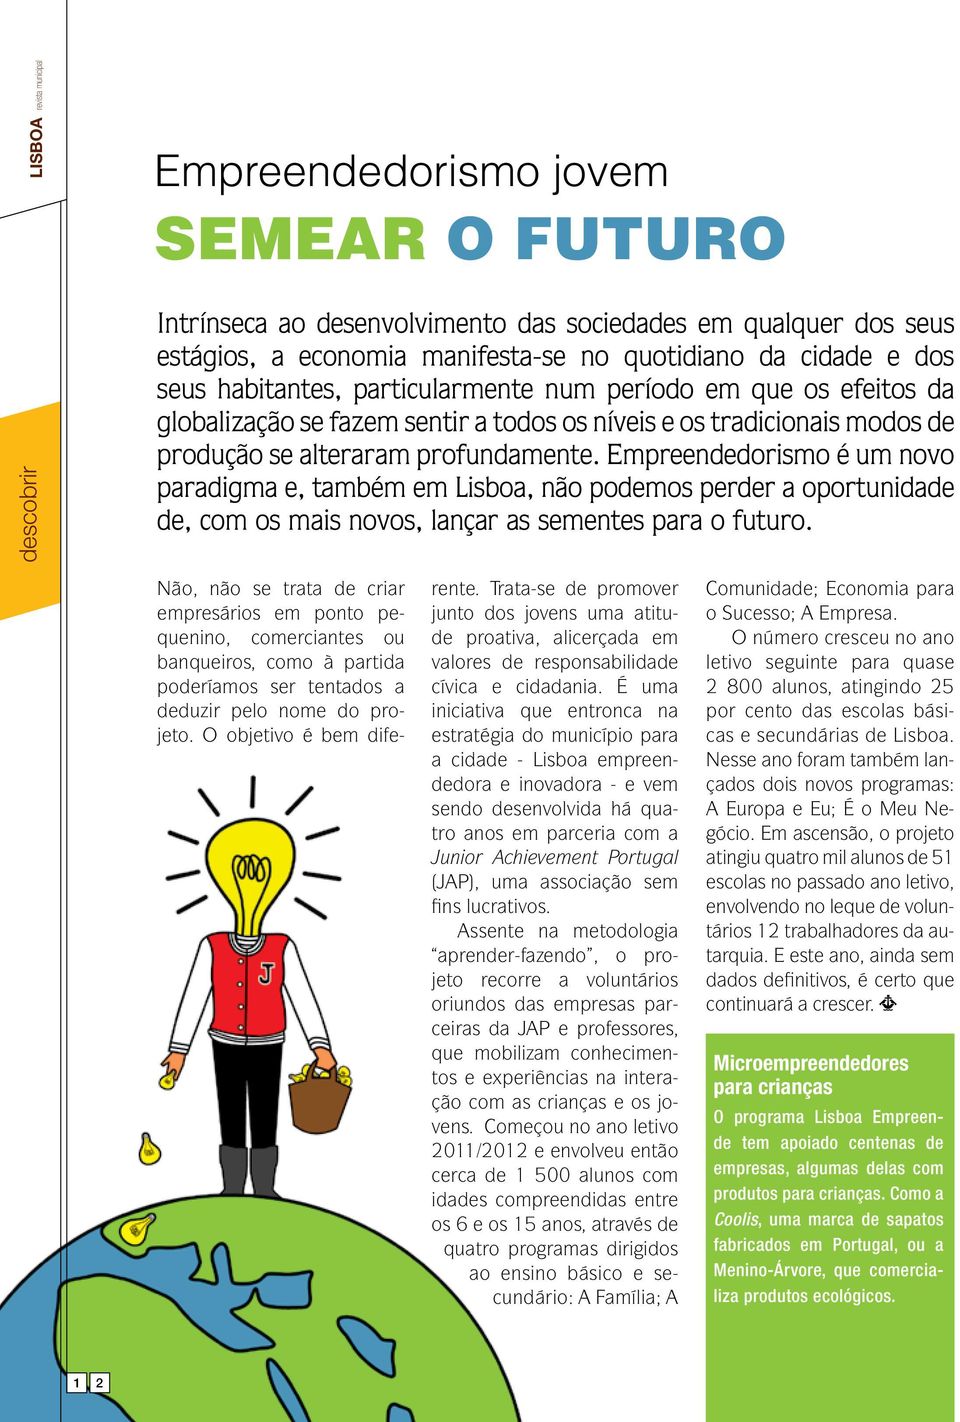 Empreendedorismo é um novo paradigma e, também em Lisboa, não podemos perder a oportunidade de, com os mais novos, lançar as sementes para o futuro.